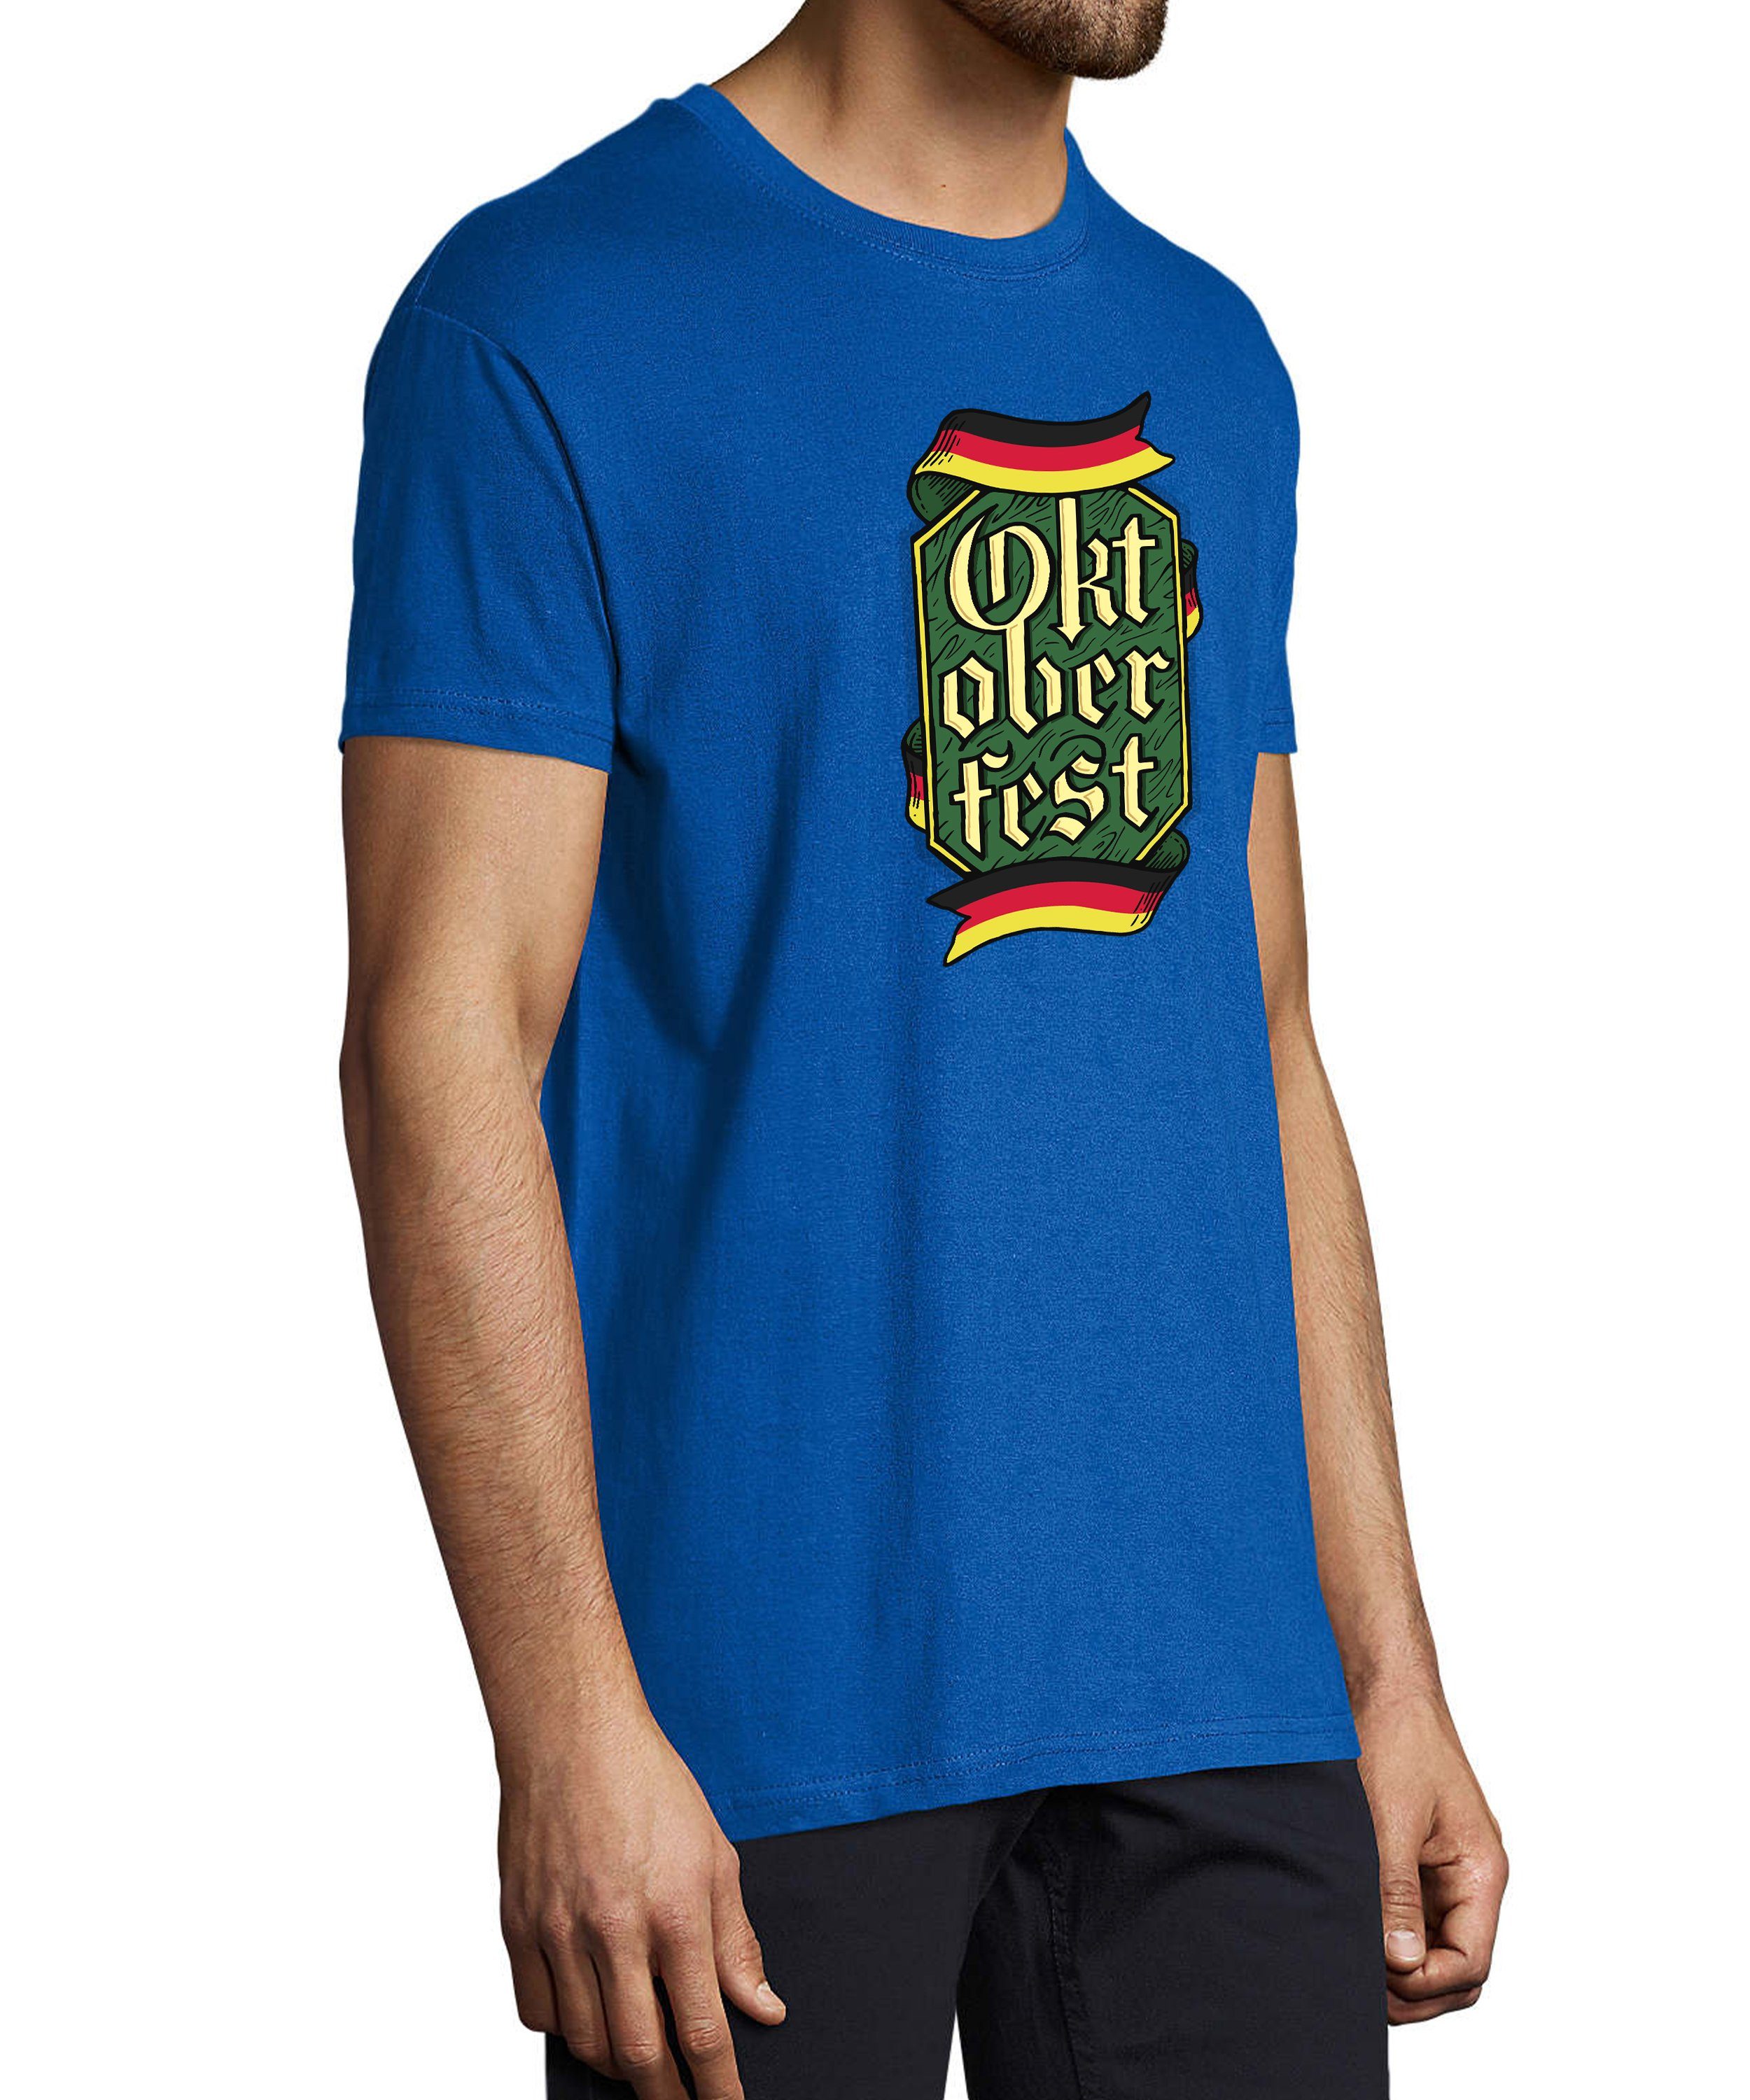 - MyDesign24 Fit, Party T-Shirt Shirt Trinkshirt blau Regular Oktoberfest T-Shirt Baumwollshirt i323 mit Aufdruck Herren royal